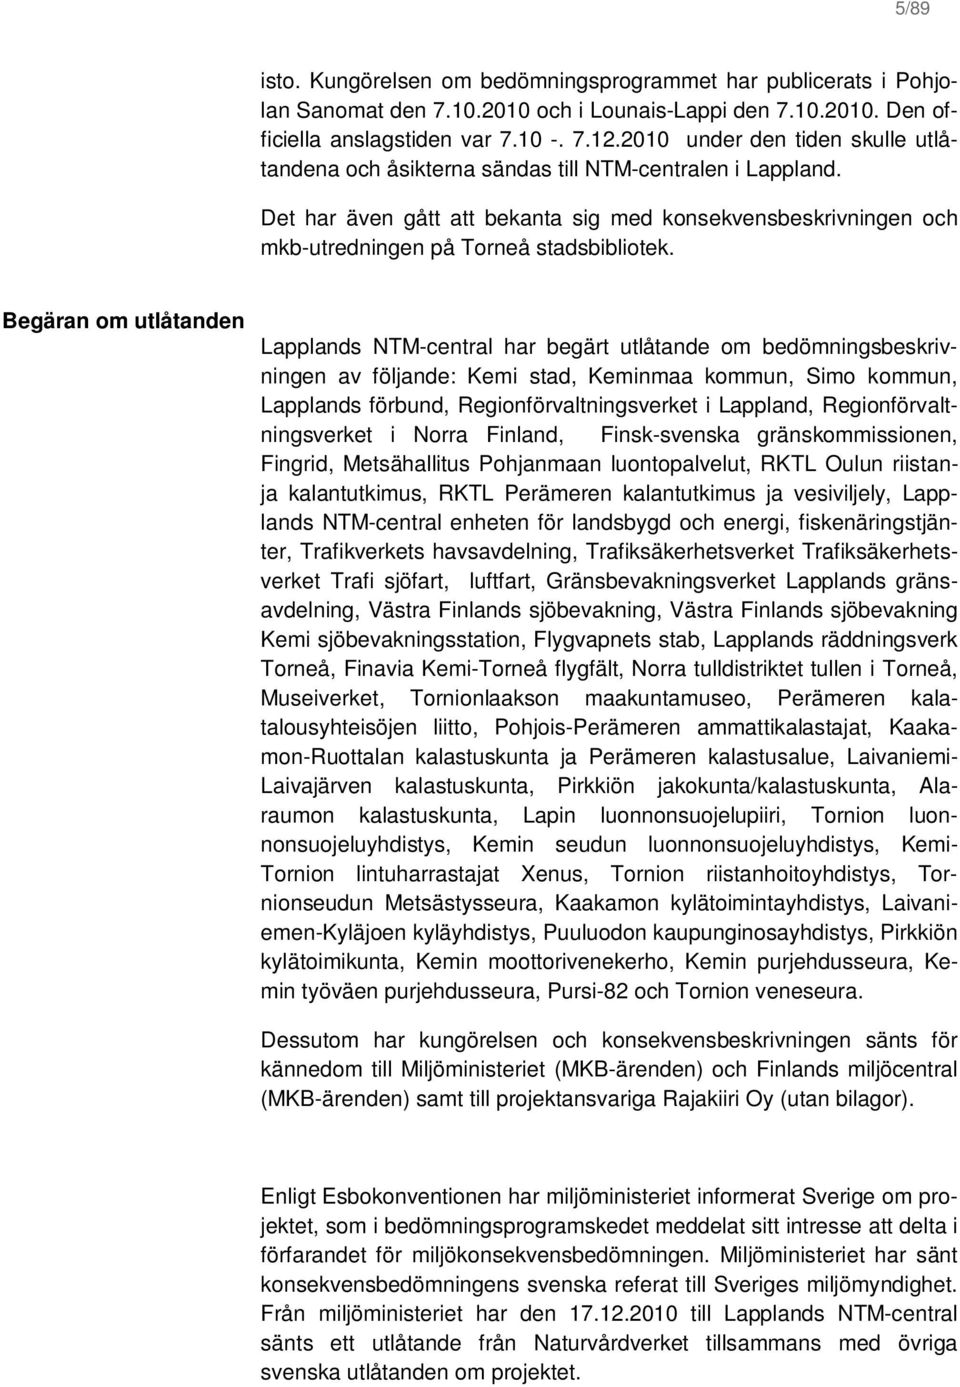 Begäran om utlåtanden Lapplands NTM-central har begärt utlåtande om bedömningsbeskrivningen av följande: Kemi stad, Keminmaa kommun, Simo kommun, Lapplands förbund, Regionförvaltningsverket i